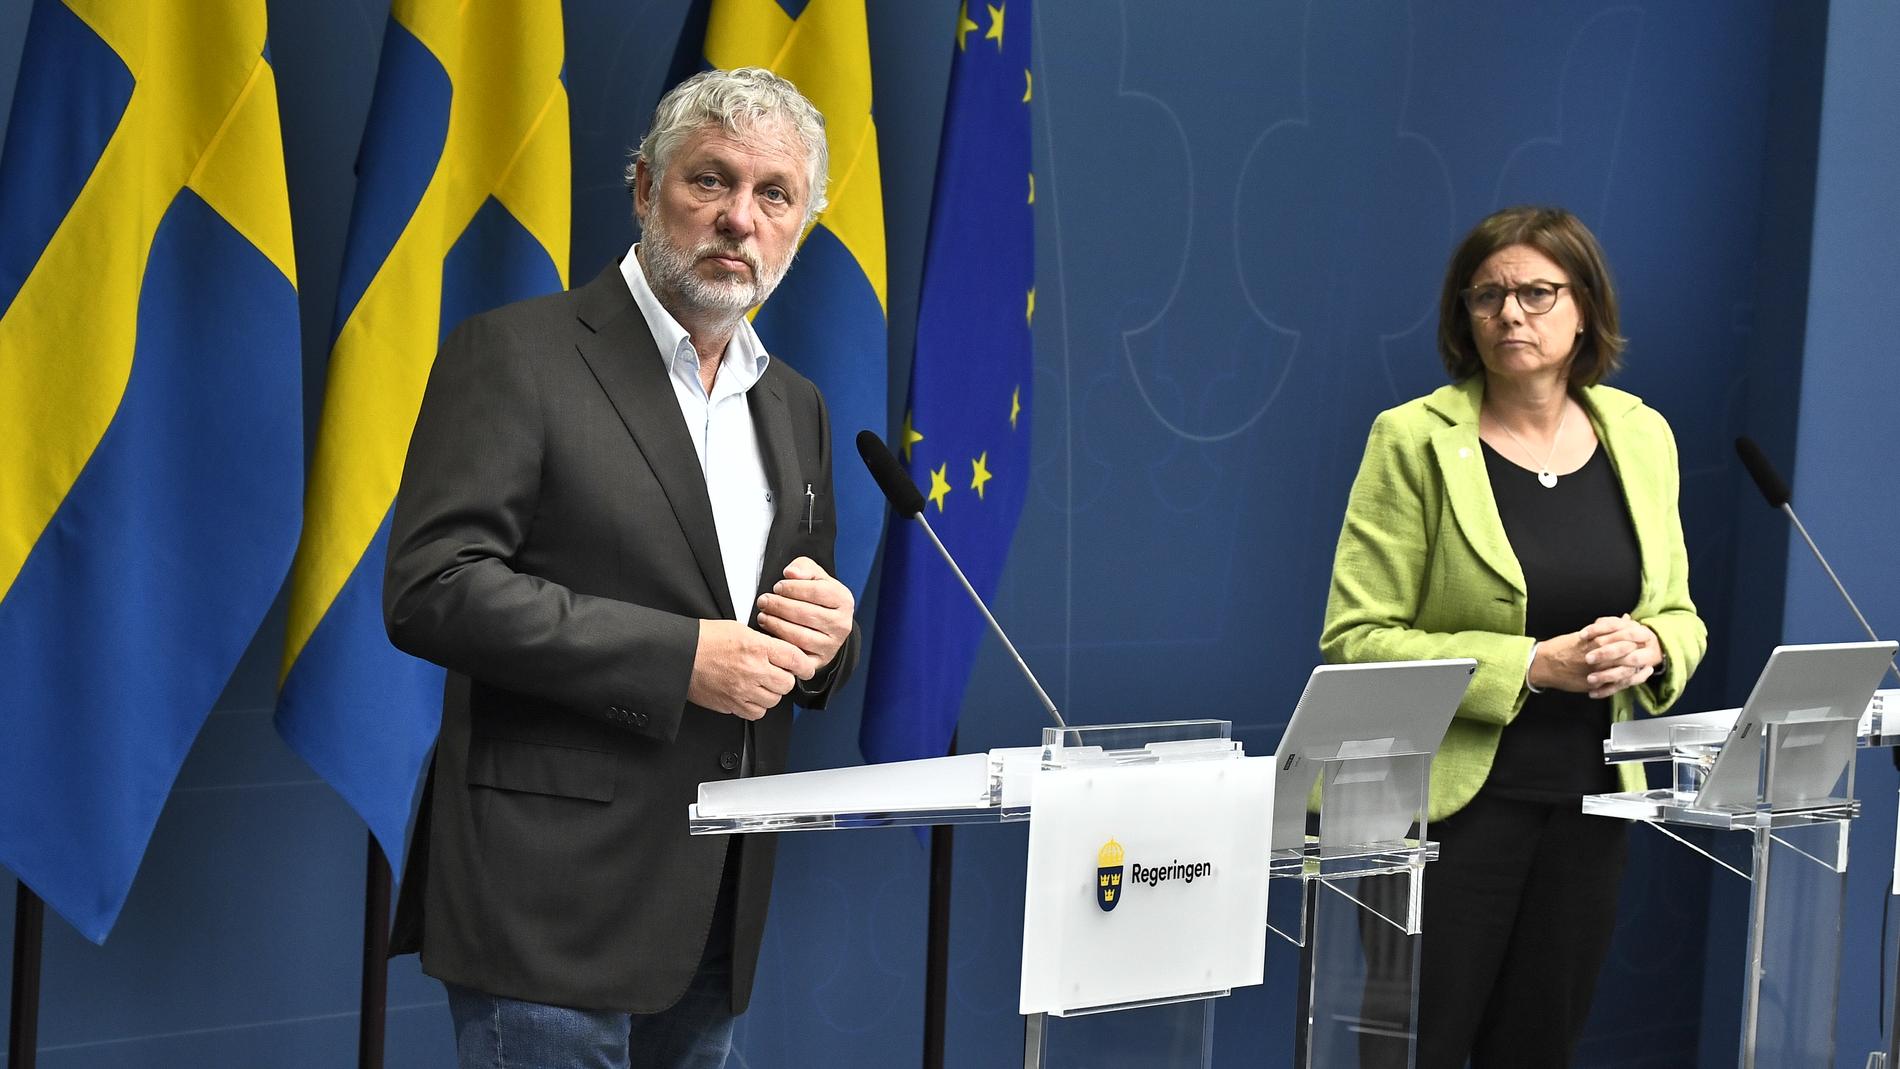 Biståndsminister Peter Eriksson (MP) och vice statsminister Isabella Lövin (MP) flyttar om 380 miljoner av biståndet till förmån för flera FN-organ.